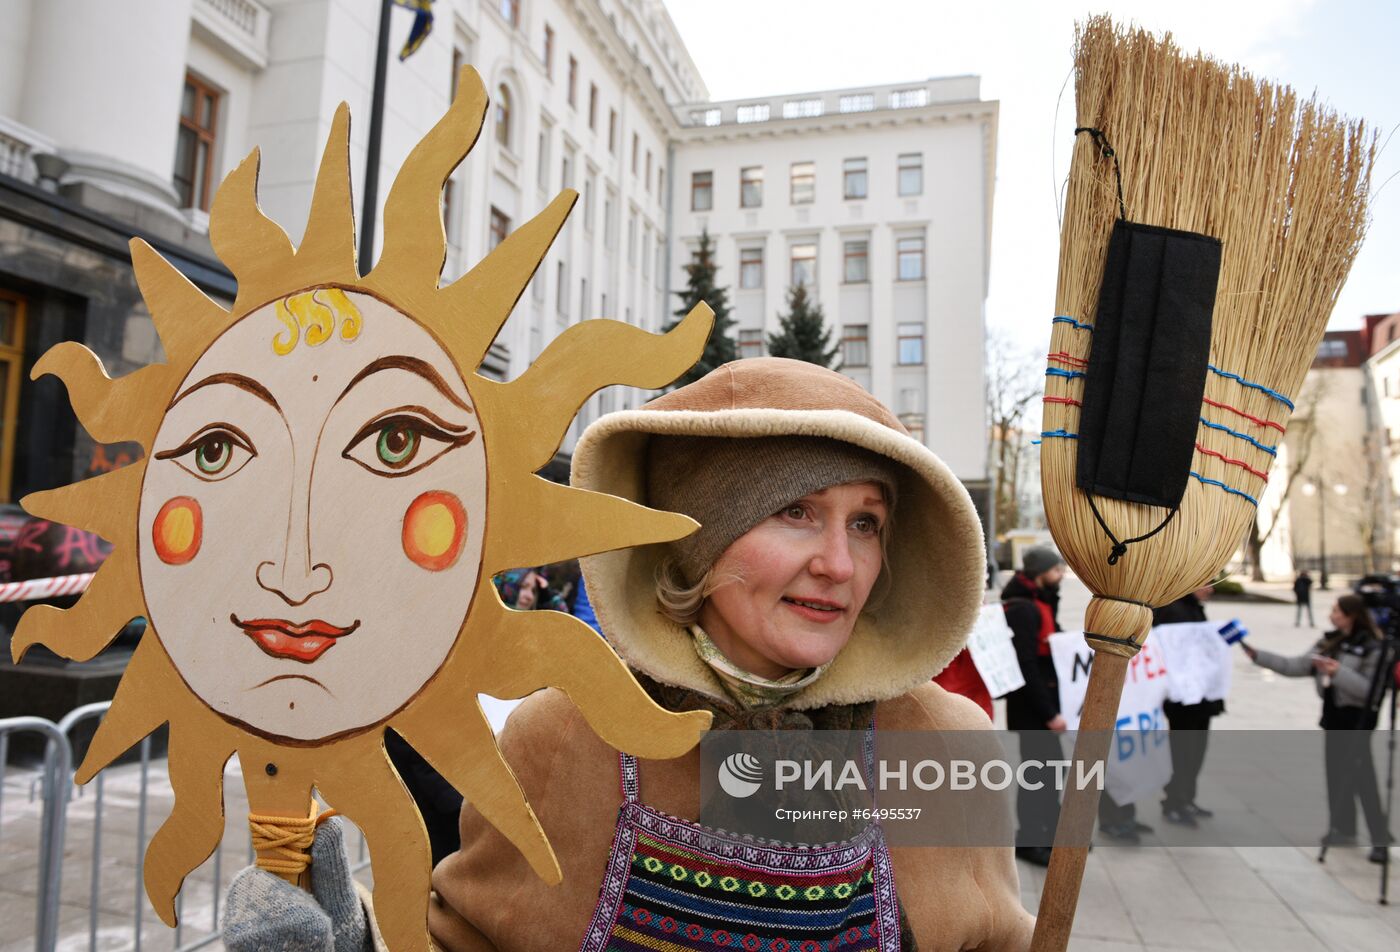 Акция "Нет смертельной вакцинации!" в Киеве